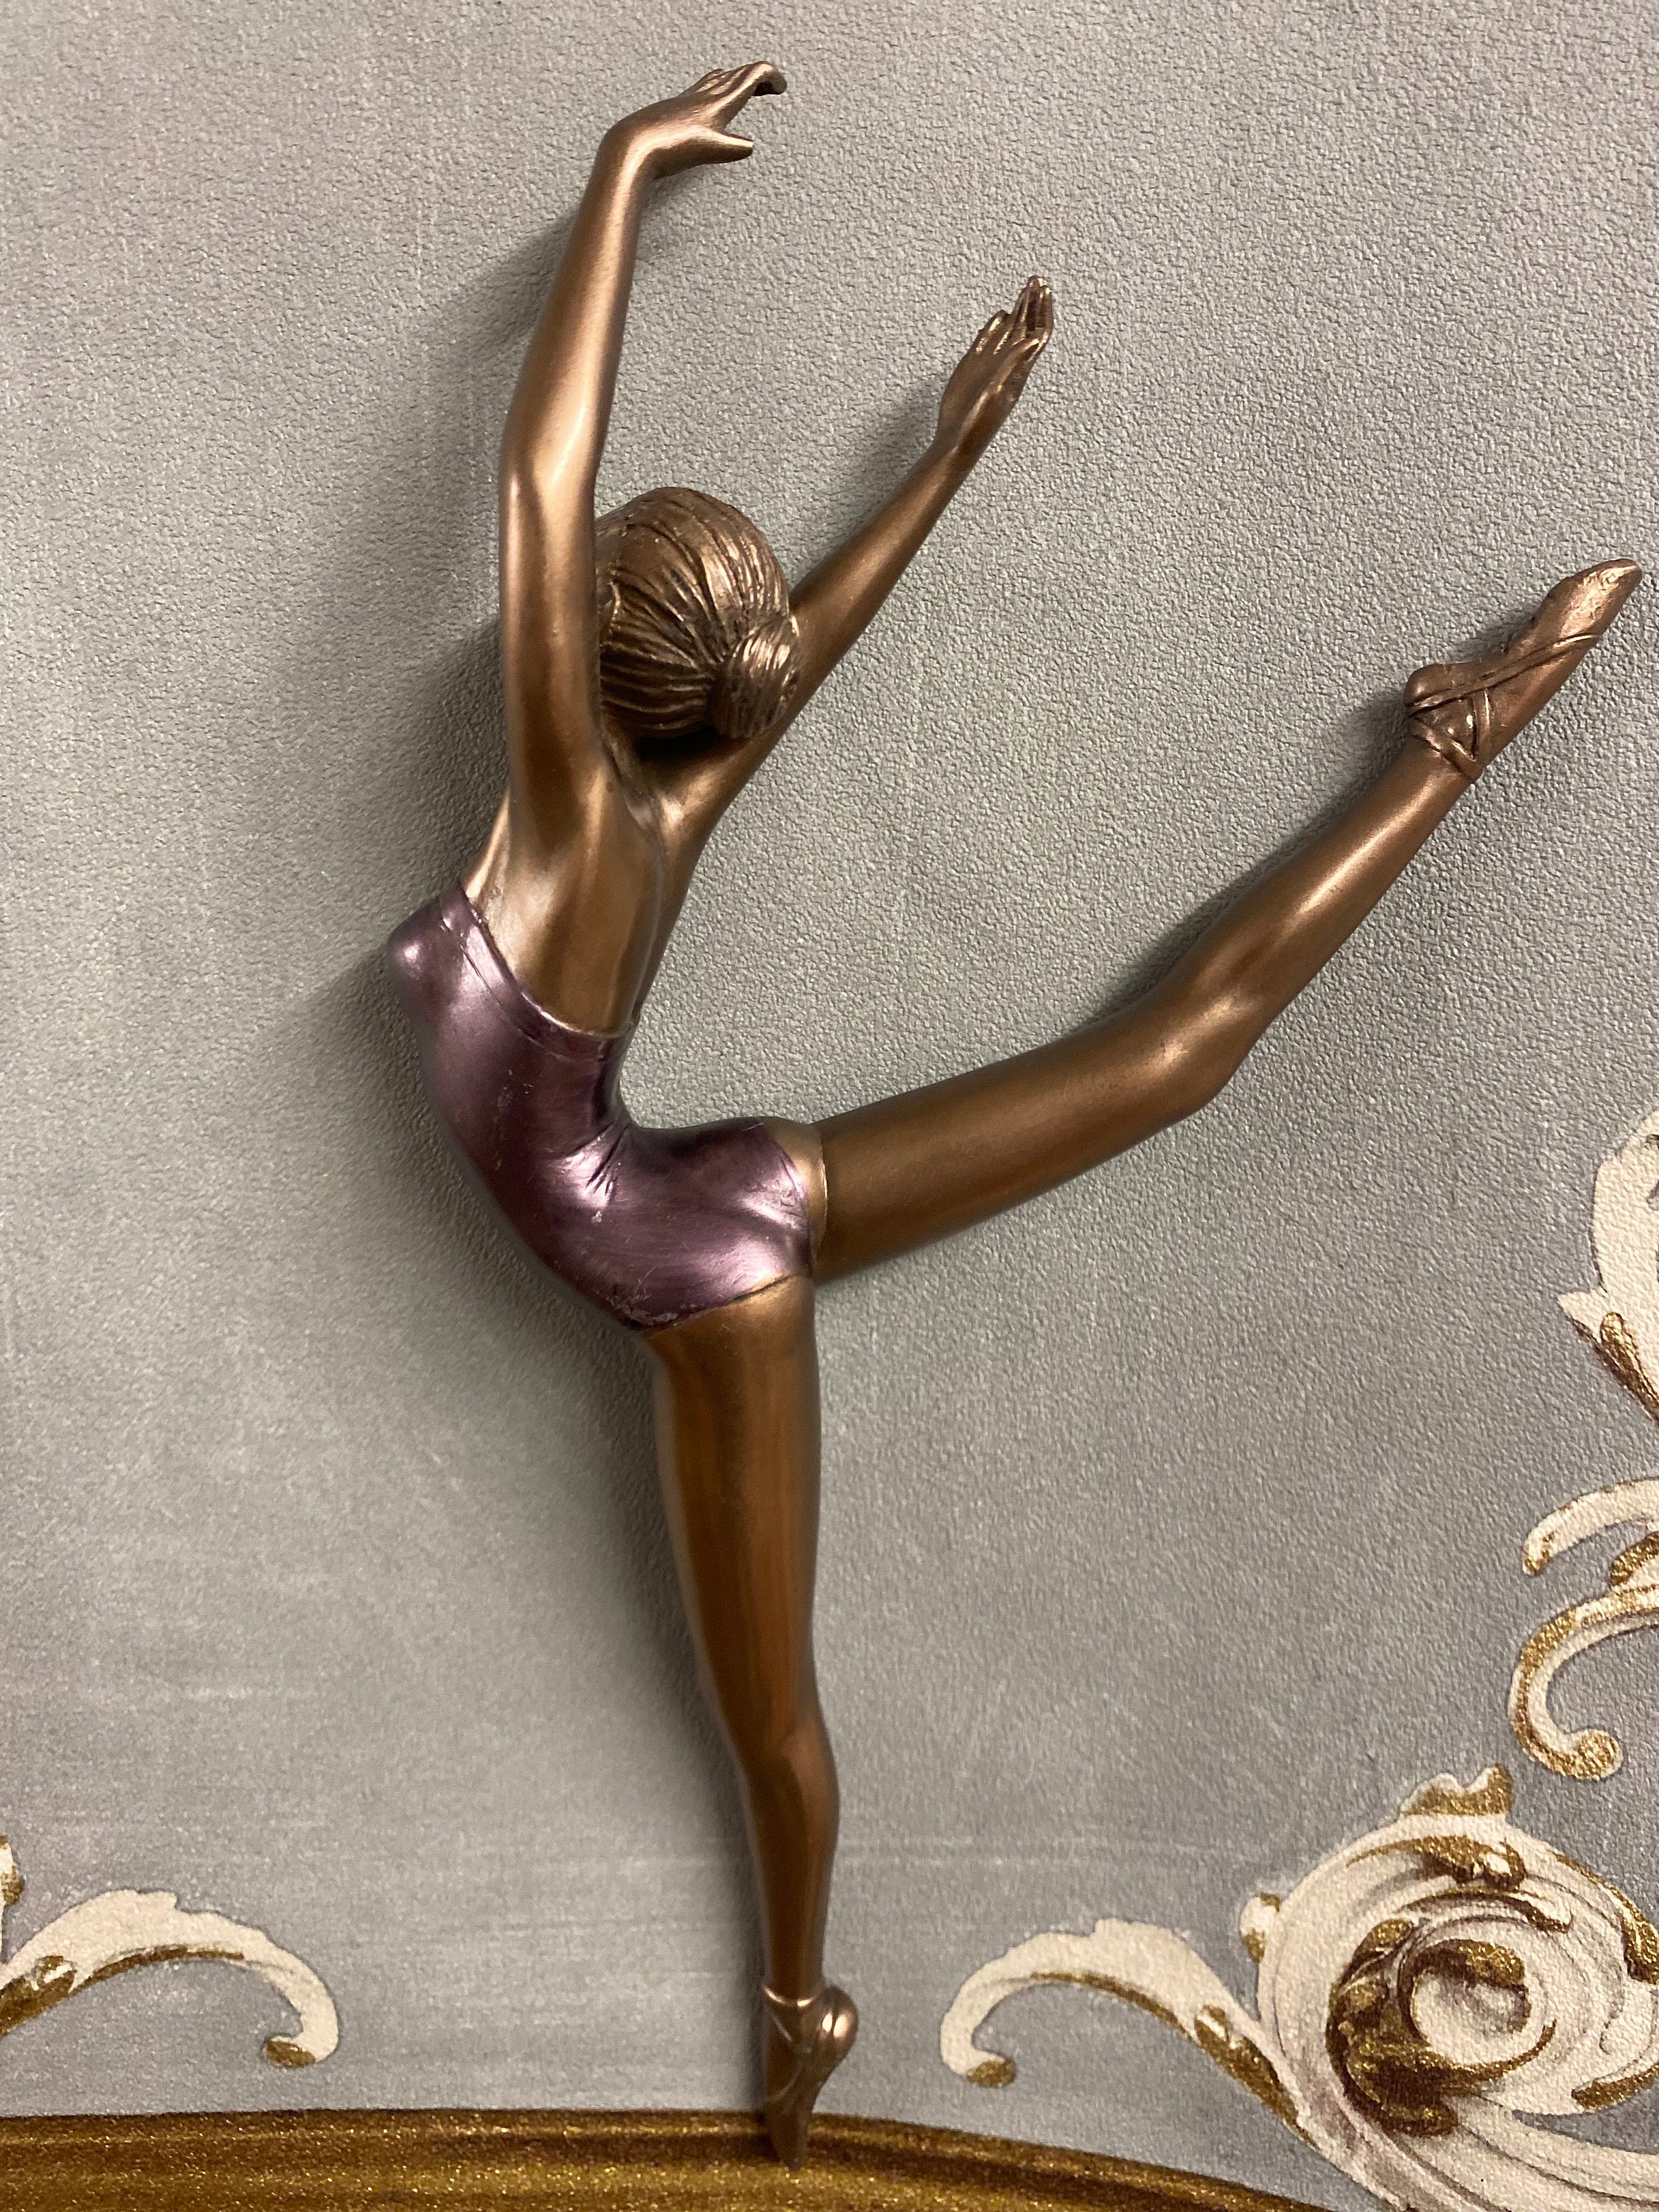 Ballet Slipper en Pointe Stained Glass 